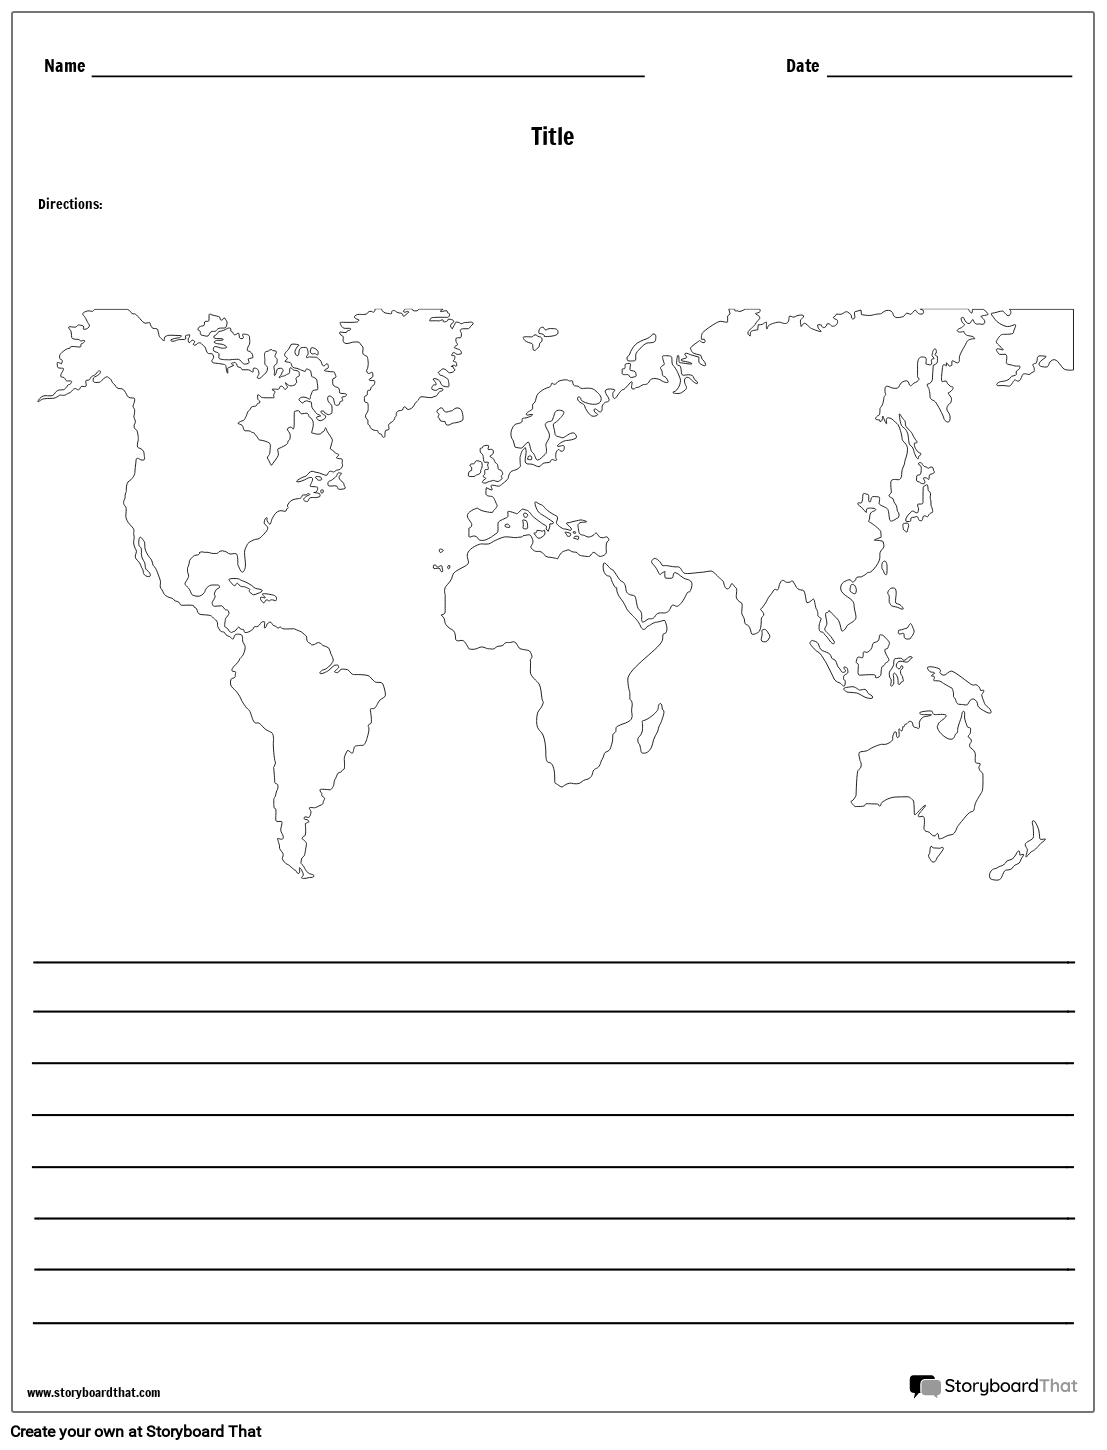 خريطة العالم - مع خطوط